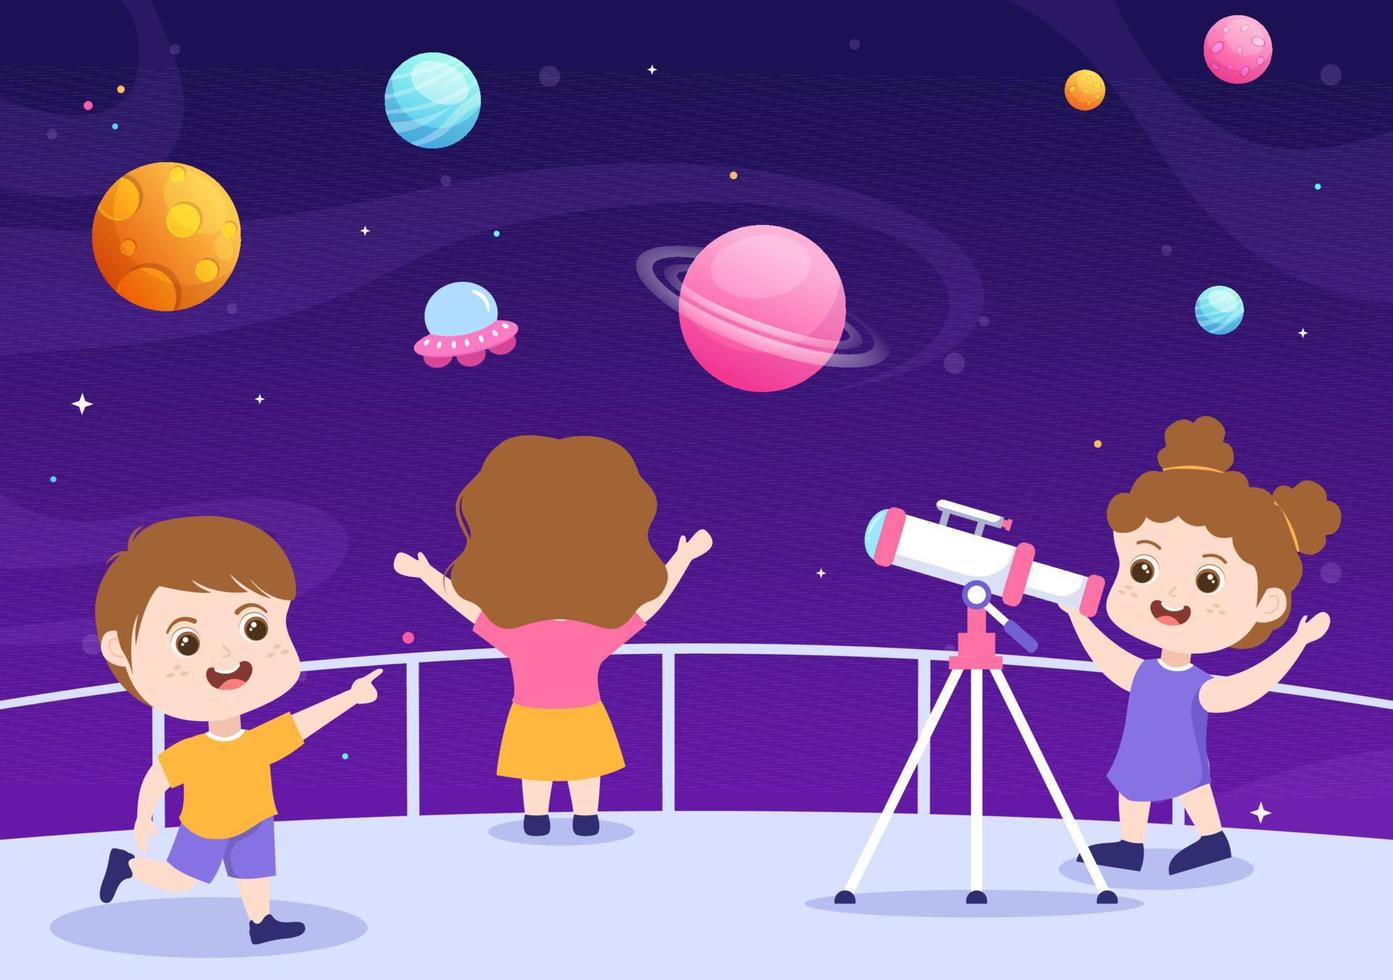 illustrazione del fumetto di astronomia con bambini carini che guardano il cielo stellato notturno, la galassia e i pianeti nello spazio attraverso il telescopio in stile disegnato a mano piatto vettore